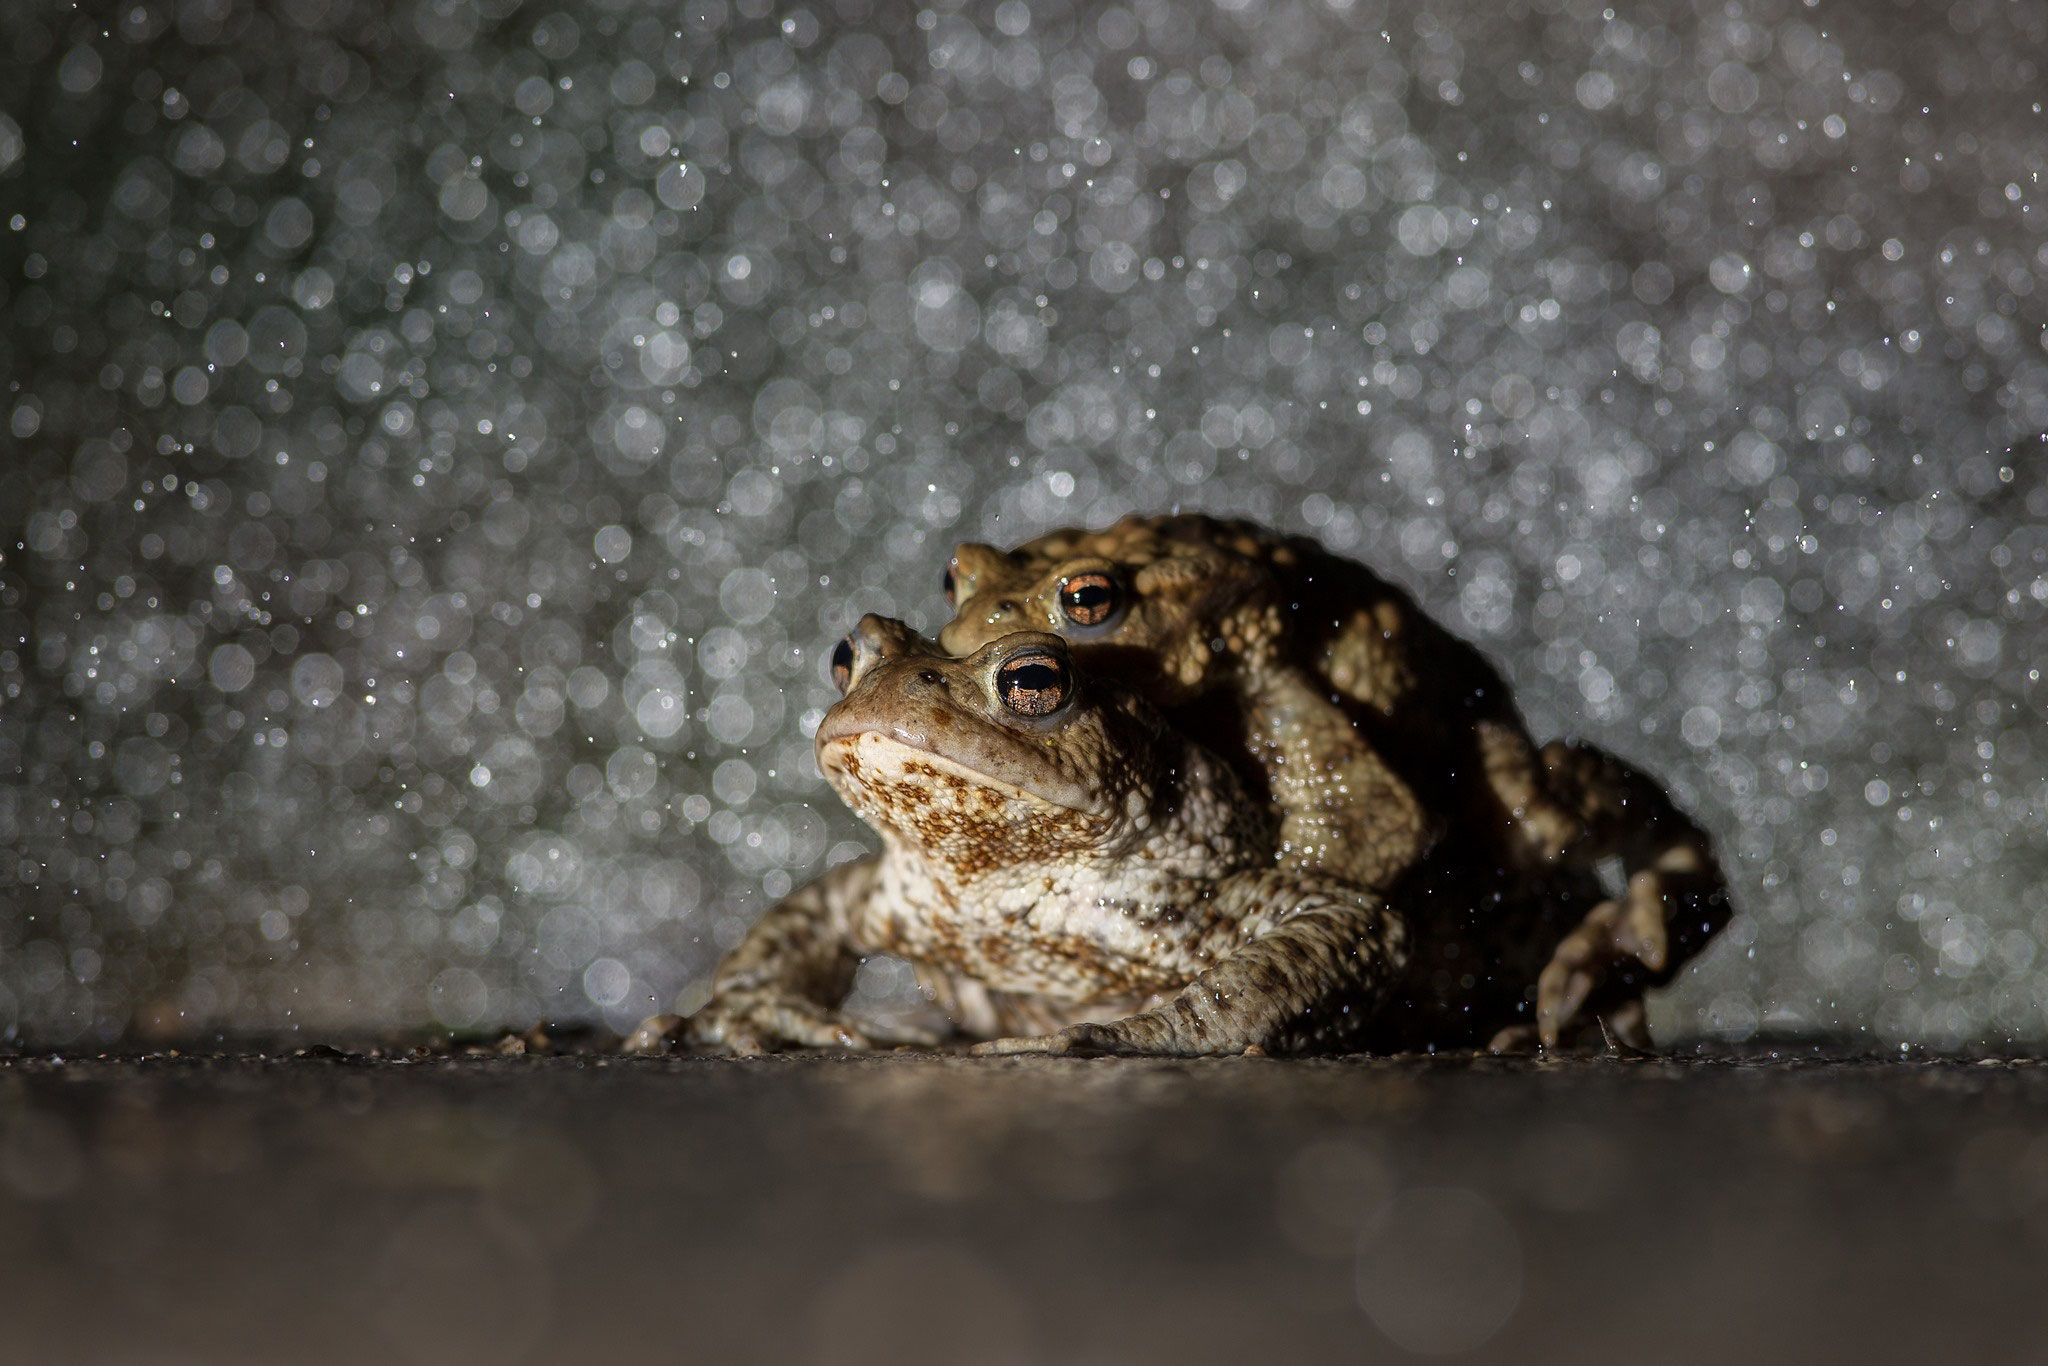 © Common Toad / Slovenia